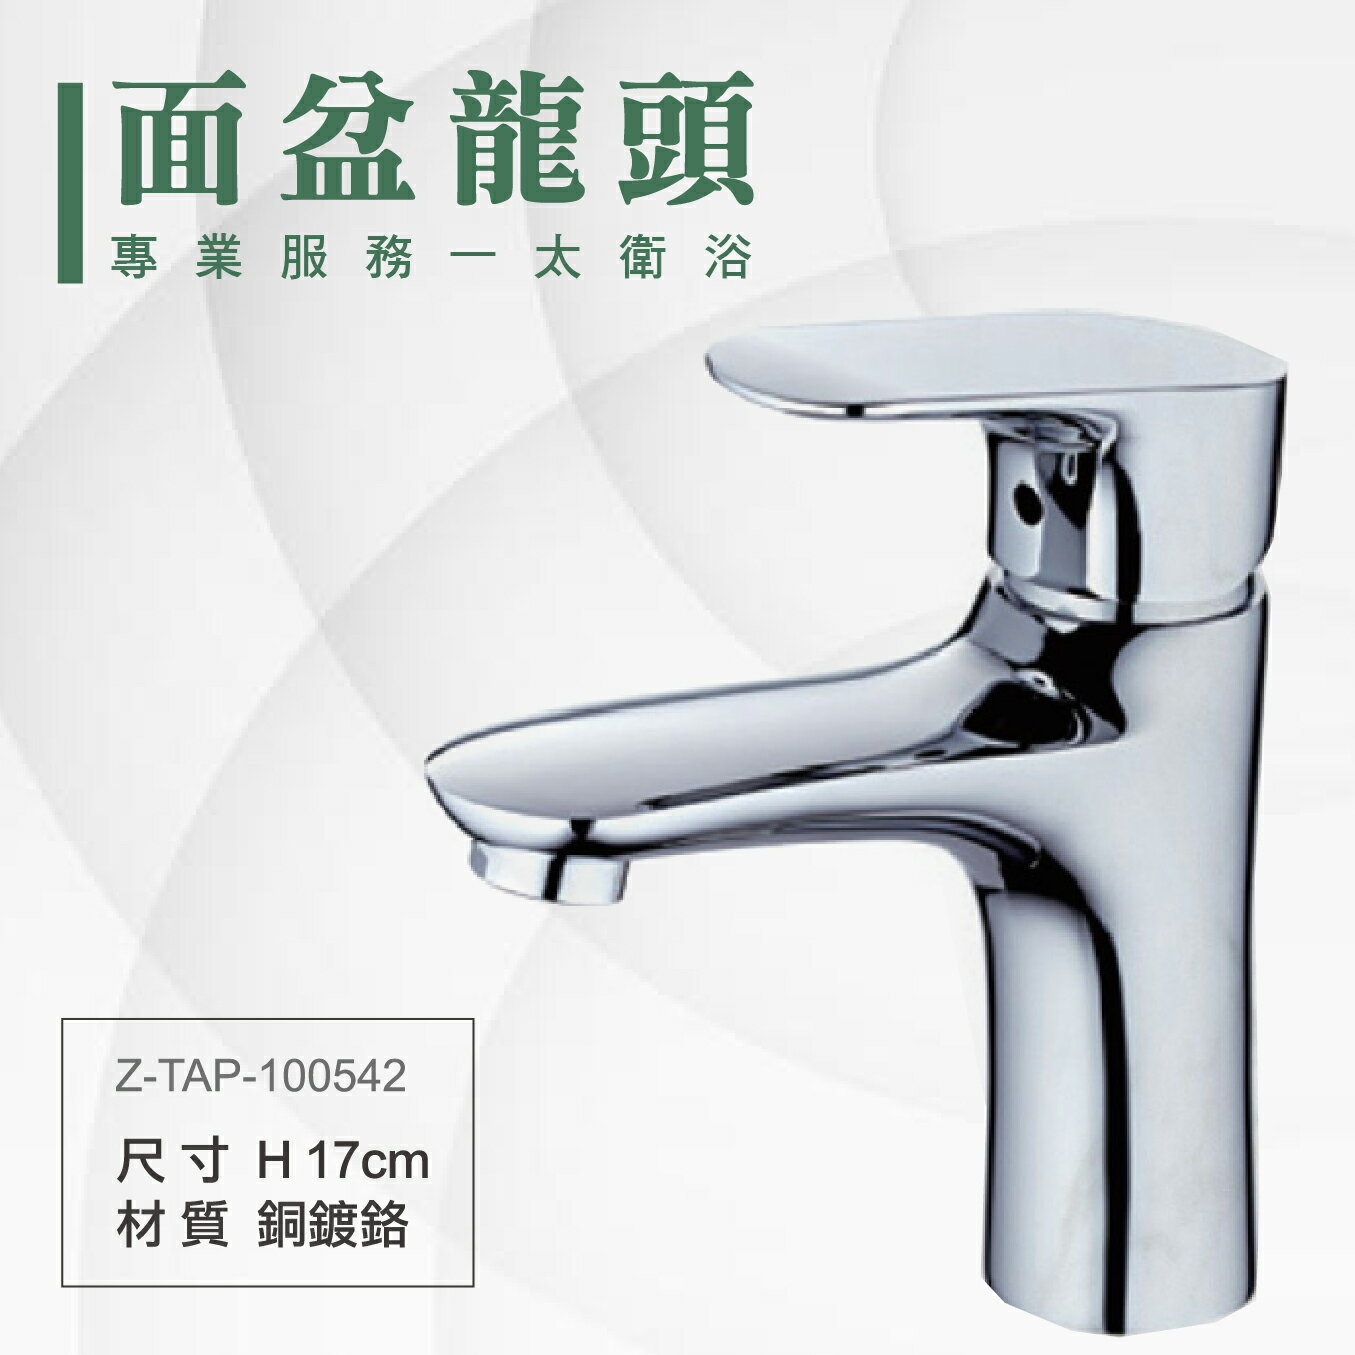 ITAI一太 單面盆水龍頭 Z-TAP-100542 洗手台水龍頭 銅鍍鉻材質 瓷盆浴櫃 安裝費另計 浴室 洗手台